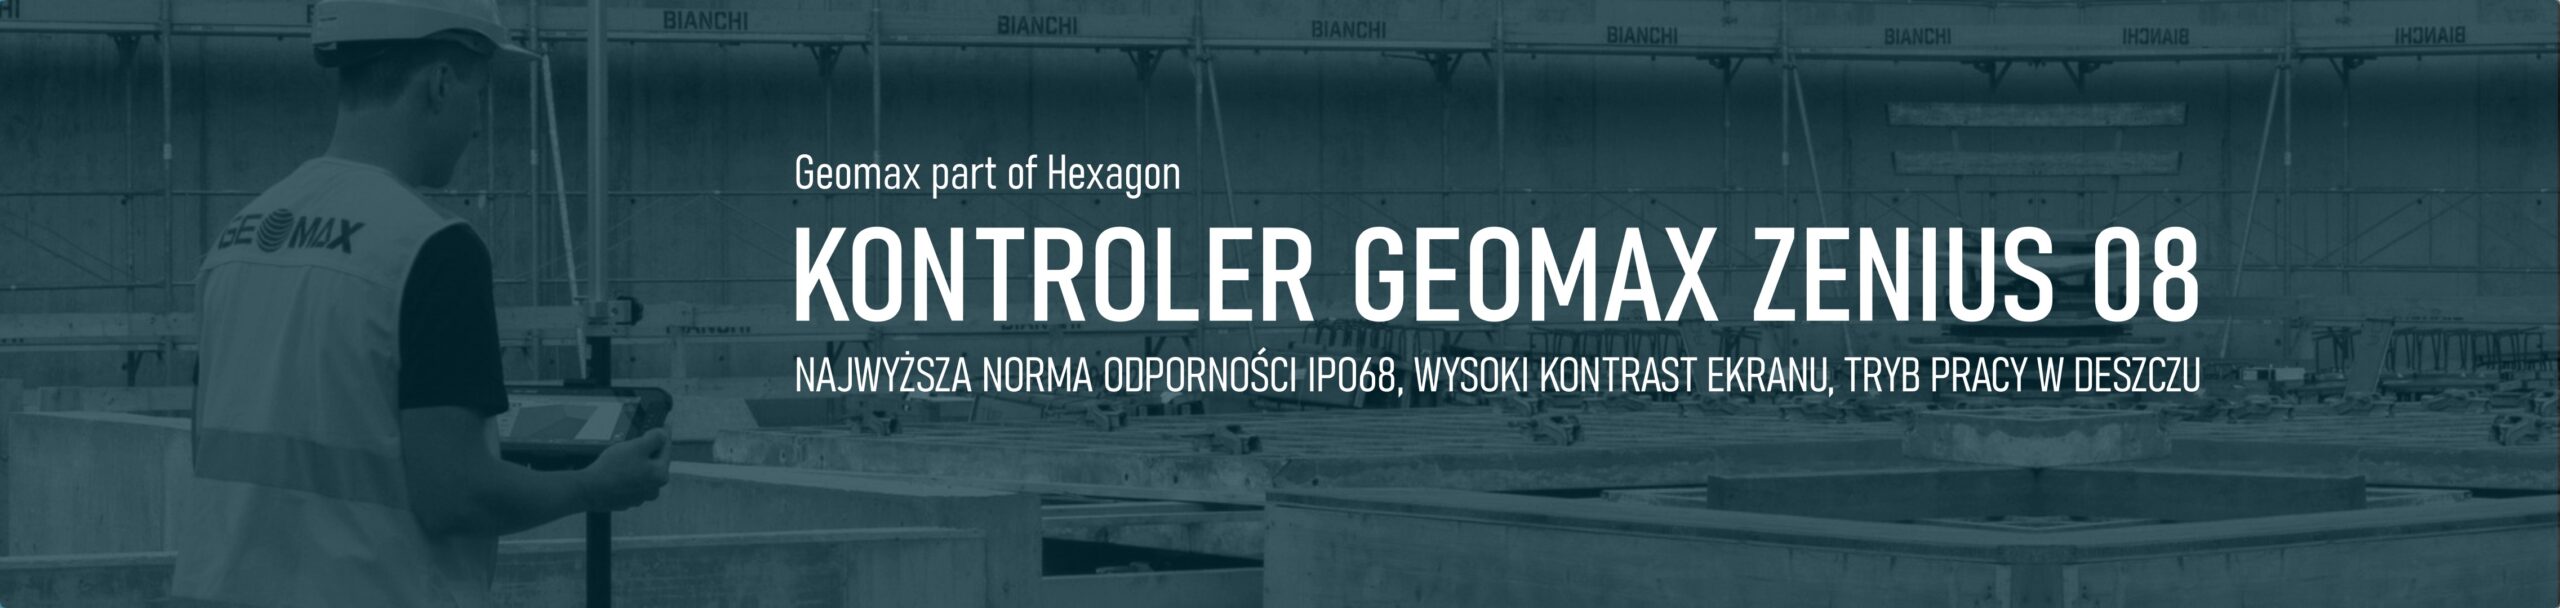 Kontroler polowy Geomax; kontroler do odbiornika GNSS RTK Geomax; uniwersalny kontroler polowy do RTK GNSS; kontroler polowy do odbiornika geodezyjnego geomax; Profesjonalne kontrolery polowe do zastosowań geodezyjnych. Kontrolery polowe do odbiorników GNSS RTK-sprawdź cena, promocja. Sklep geodezyjny geoshop.pl-oferuje profesjonalne kontrolery polowe do zestawów odbiorników GNSS RTK RTN. Kontroler polowy Nautiz X6 Handheld; Kontroler polowy Getac PS236; Kontroler polowy Getac PS336; kontroler polowy Psion Pro 3; kontrolery polowe Trimble; kontrolery polowe Leica Geosystems; kontrolery polowe Topcon; kontrolery polowe Kolida; kontrolery polowe Ruide; kontrolery polowe South; kontrolery polowe Geomax; kontrolery polowe Stonex; kontrolery polowe do odbiorników geodezyjnych GPS; kontroler polowy do zestawów RTK pełna oferta; tanie kontrolery polowe; cena kontrolery geodezyjne; NAUTIZ kontrolery geodezyjne polowe; serwis i naprawa kontrolerów polowych; rejestratory polowe geodezyjne; rejestratory polowe do odbiorników GNSS RTK RTN geodezyjne; rejestrator polowy do odbiornika geodezyjnego GPS; używane i nowe kontrolery polowe dla geodezji;Przemysłowe kontrolery polowe; Szeroka oferta kontrolerów polowych dla geodezji; kontroler polowy Algiz RT8 do odbiorników gnss rtk; kontroler polowy do odbiornika gnss nautiz algiz rt8; pancerny tablet do gps; pancerny tablet do rtk; kontrolery polowe nowe i używane; kontroler polowy do tachimetru zmotoryzowanego; kontroler polowy do tachimetru robotycznego; rejestrator polowy do odbiornika gnss rtk rtn; rejestrator polowy do tachimetru; Kontroler polowy nautiz algiz rt8; Kontroler polowy tablet; pełna oferta geodezyjne kontrolery polowe; Kontrolery polowe do zestawów RTK; tani kontroler polowy do odbiorników GNSS; rejestrator geodezyjny kontroler polowy dla geodezji; kontrolery polowe do zestawów GNSS RTK; kontroler polowy do odbiorników geodezyjnych; używane kontrolery polowe do zestawów odbiorników geodezyjnych GNSS RTK; kontroler RTK; kontroler polowy do tachimetru zmotoryzowanego; kontroler polowy do tachimetru robotycznego; kontroler polowy używany tachimetr; komis sprzętu geodezyjnego; rejestrator polowy do odbiornika GNSS RTK; rejestrator polowy geodezyjny; pancerny kontroler polowy geodezyjny do odbiornika GNSS RTK; komputer polowy geodezja; kontroler geodezja; rejestrator geodezyjny do odbiornika GNSS; tablet geodezyjny GNSS RTK; pancerne kontrolery polowe geodezja GNSS RTK; pancerny kontroler polowy RTK; kontroler polowy do odbiornika gps gnss rtk ruide; kontroler polowy do odbiornika gps gnss rtk kolida; kontroler polowy do odbiornika gps gnss rtk south; kontroler polowy do odbiornika gps gnss rtk stonex; kontroler polowy do odbiornika gps gnss rtk leica; kontroler polowy do odbiornika gps gnss rtk topcon; kontroler polowy do odbiornika gps gnss rtk trimble; kontroler polowy do odbiornika gps gnss rtk hi-target; kontroler polowy do odbiornika gps gnss rtk chc; używany kontroler polowy; używany kontroler polowy Leica; używany kontroler polowy Trimble; używany kontroler polowy Topcon; używany kontroler polowy Geomax; używany kontroler polowy South; używany kontroler polowy Kolida; używany kontroler polowy Ruide; używany kontroler polowy Stonex; używany kontroler polowy Spectra; używany kontroler polowy Nomad; używany kontroler polowy Recon; używany kontroler polowy Getac; używany kontroler polowy Hi-Target; używany kontroler polowy Leica CS10; używany kontroler polowy Leica CS15; używany kontroler polowy Leica CS20; używany kontroler polowy Trimble TSC3; używany kontroler polowy Trimble TSC2; Kontroler T41; QuickGNSS opinie; Kontroler do GPS; Trimble TSC7 cena; Kontroler Spectra; MobileMapper; QuickGNSS instrukcja; Quick GNSS; Ranking GPS geodezyjnych; Zestaw GPS geodezja; GPS geodezyjny cena; GPS geodezyjny dokładność; GPS geodezyjny Leica; Komis geodezyjny; GPS geodezyjny sprzedam; Zestaw GPS RTK; kontroler terenowy; kontroler getac; rejestrator getac; kontroler polowy Leica CS10; kontroler polowy Leica CS15; kontroler polowy Trimble TSC2; kontroler polowy Trimble TSC3; kontroler polowy Topcon; rejestratory polowe Topcon; kontroler polowy do Kolida; kontroler polowy do South; kontroler polowy do Stonex; kontroler polowy do Ruide; kontroler polowy do Sirius; kontroler polowy do Geomax; kontroler polowy do CHC; kontroler polowy do Spectra; kontroler polowy do Epoch; Odbiornik GNSS cena; Trimble R1 cena; Zestaw RTK; Zestaw GPS RTK cena; Tani odbiornik GPS RTK; kontroler polowy do odbiornika geodezyjnego; rejestrato geodezyjnyl; Psion Workabout; kontroler Lecia; kontroler Trimble; kontroler Topcon; kontroler polowy Leica CS20; kontroler polowy Leica CS10; kontroler polowy Trimble TSC; kontroler polowy Topcon FC; Kontrolery terenowe; Kontroler z oprogramowaniem polowym Topsurv 7; Kontroler terenowy Leica CS20; leica cs20 user manual; leica cs20 price; Leica CS20; Leica CS20 cena; leica cs20 for sale; Leica GS18T; Leica CS15; Leica CS30; Trimble TSC7; Trimble TSC5 cena; Trimble TSC7 cena; Trimble TSC5; Trimble TSC7 instrukcja; Trimble R12i; TDC600; Trimble TSC3 Instrukcja; kontroler tablet Geomax; kontroler polowy tablet Geomax; tablet Geomax Zenius 08; tablet odporny do geodezji; kontroler na budowę; kontroler polowy dla geodezji Geomax; kontroler polowy tablet Geomax Zenius 08; tablet Leica; tablet Trimble; kontroler na budowę Leica; kontroler tablet na budowę trimble;